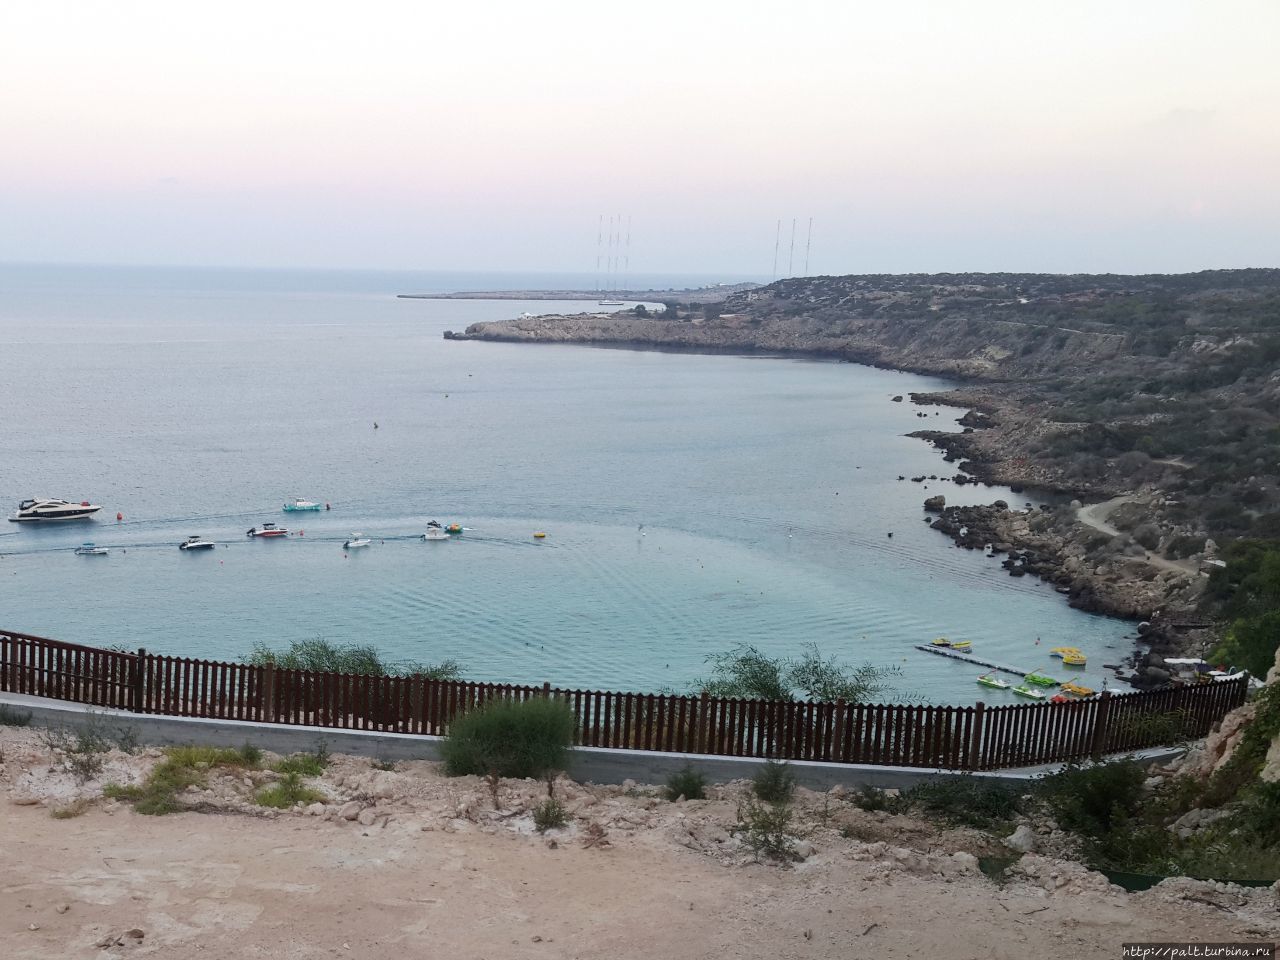 Вид из ресторана Spartiatis на залив Коннос и Мыс Греко. На заднем плане на полуострове Sougl видны вышки военной радиолокационной базы Великобритании Протарас, Кипр